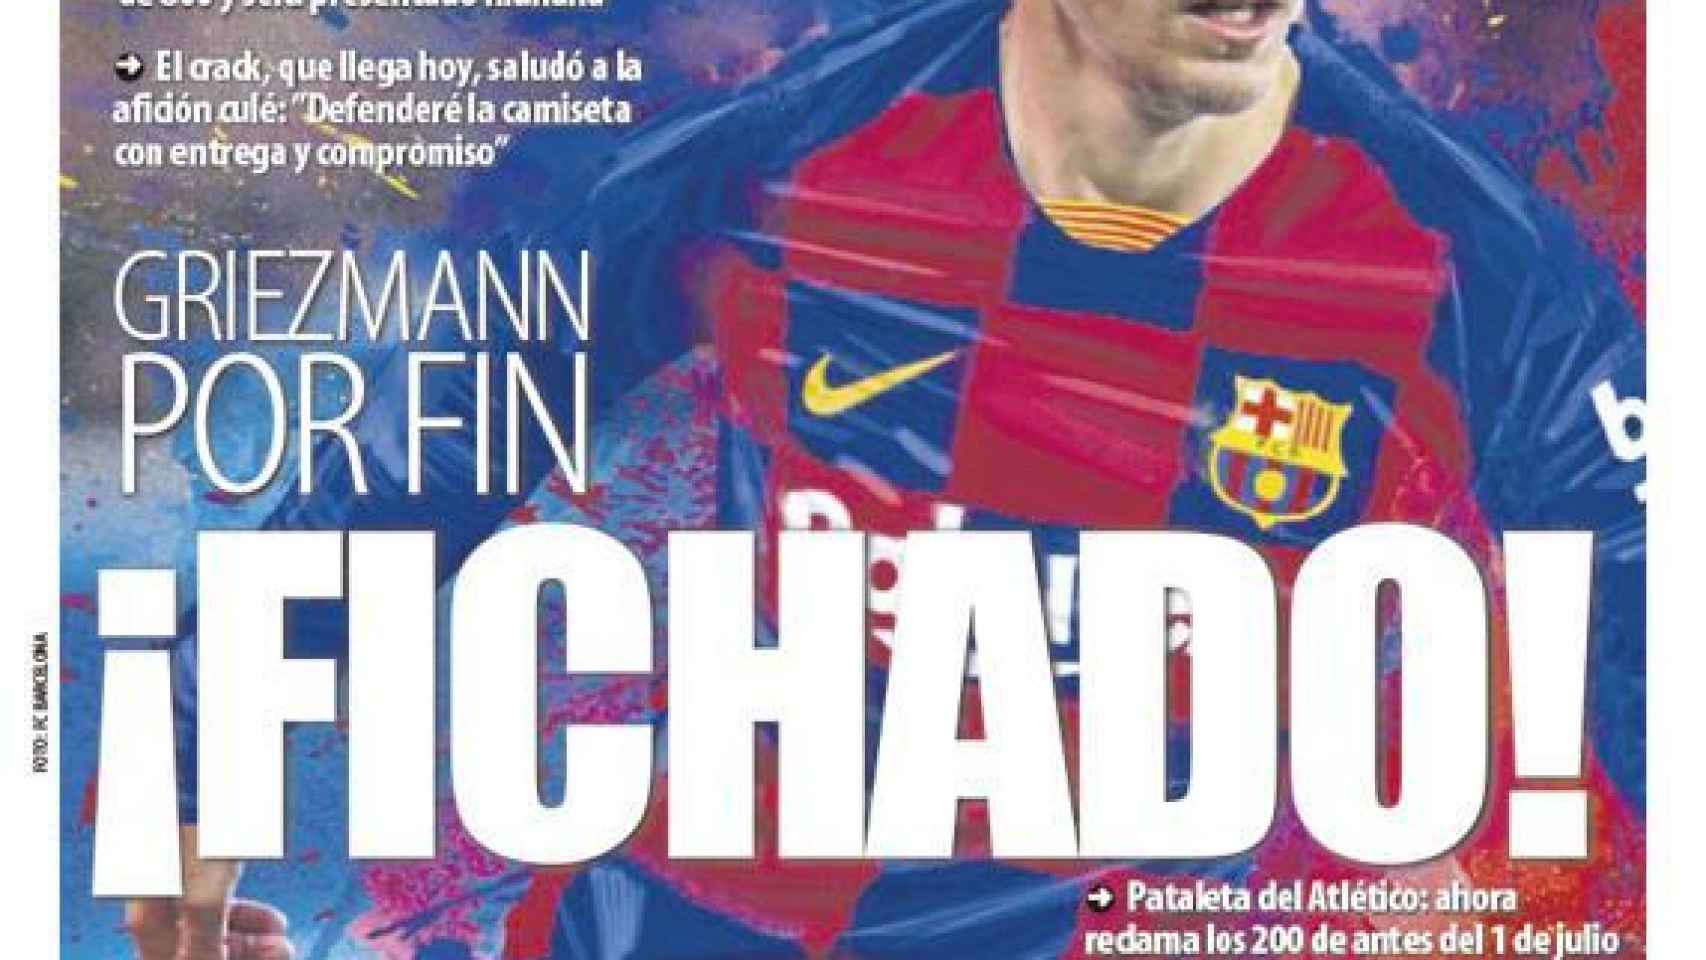 La portada del diario Mundo Deportivo (13/07/2019)